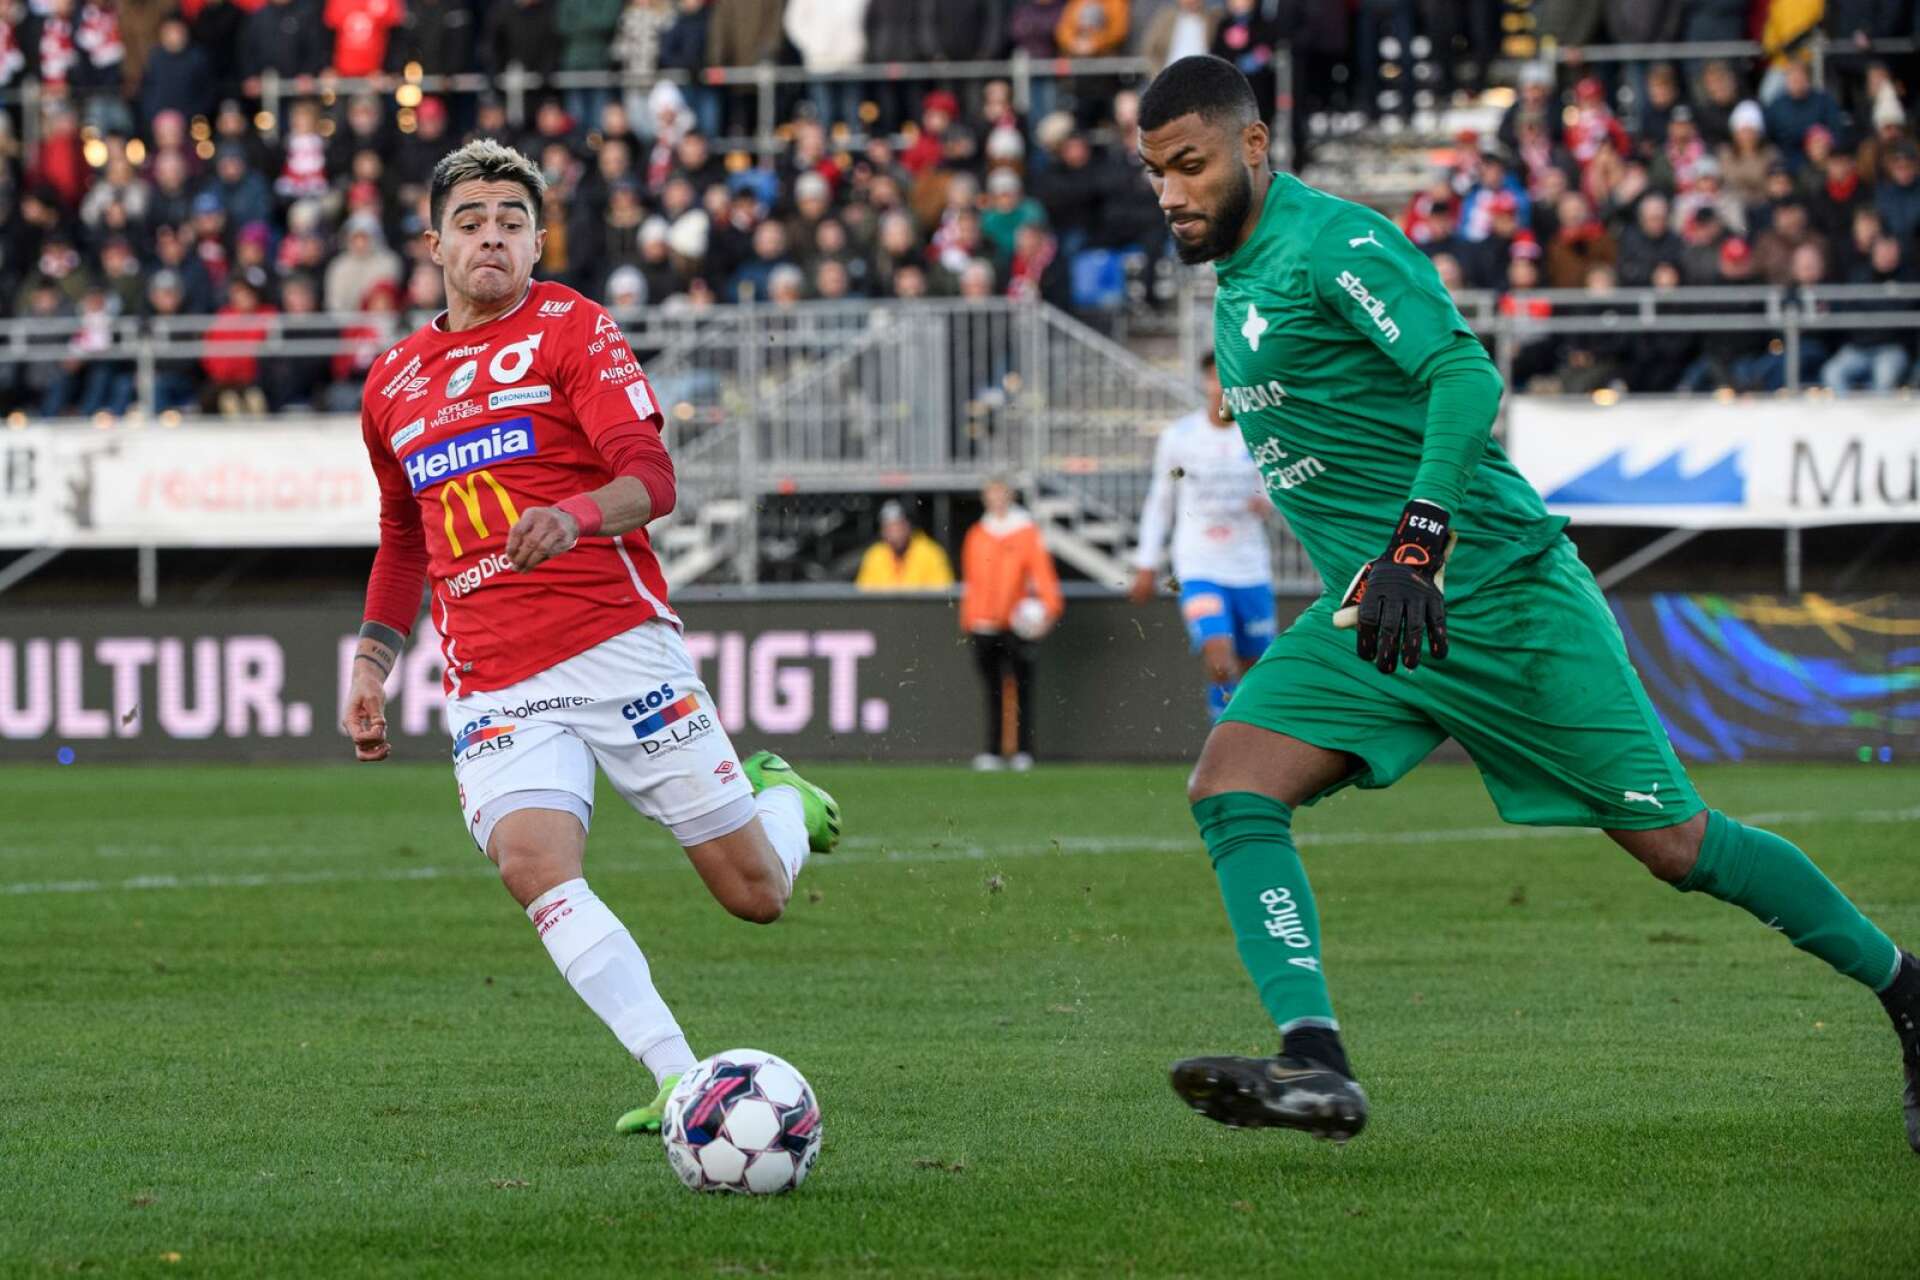 Diego Campos gjorde ett starkt inhopp i den mållösa hemmamatchen mot Värnamo förra hegen och får chansen från start mot Malmö FF.